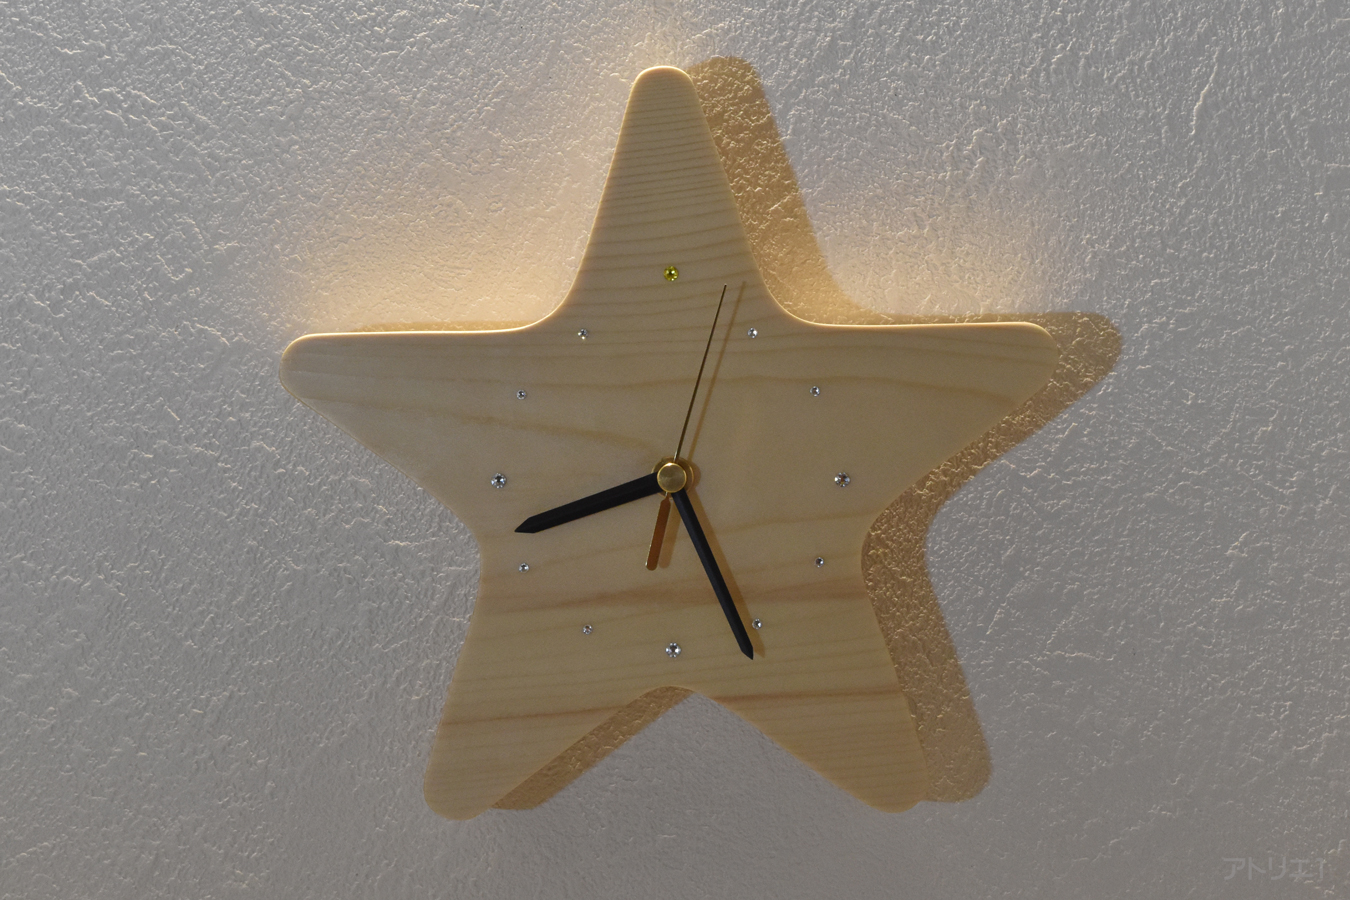 文字盤には大きめのスワロフスキーを十字に配置し、時計の中に南十字星がイメージできるようにしました。部屋の照明を受けて小さいながらも光り輝きます。